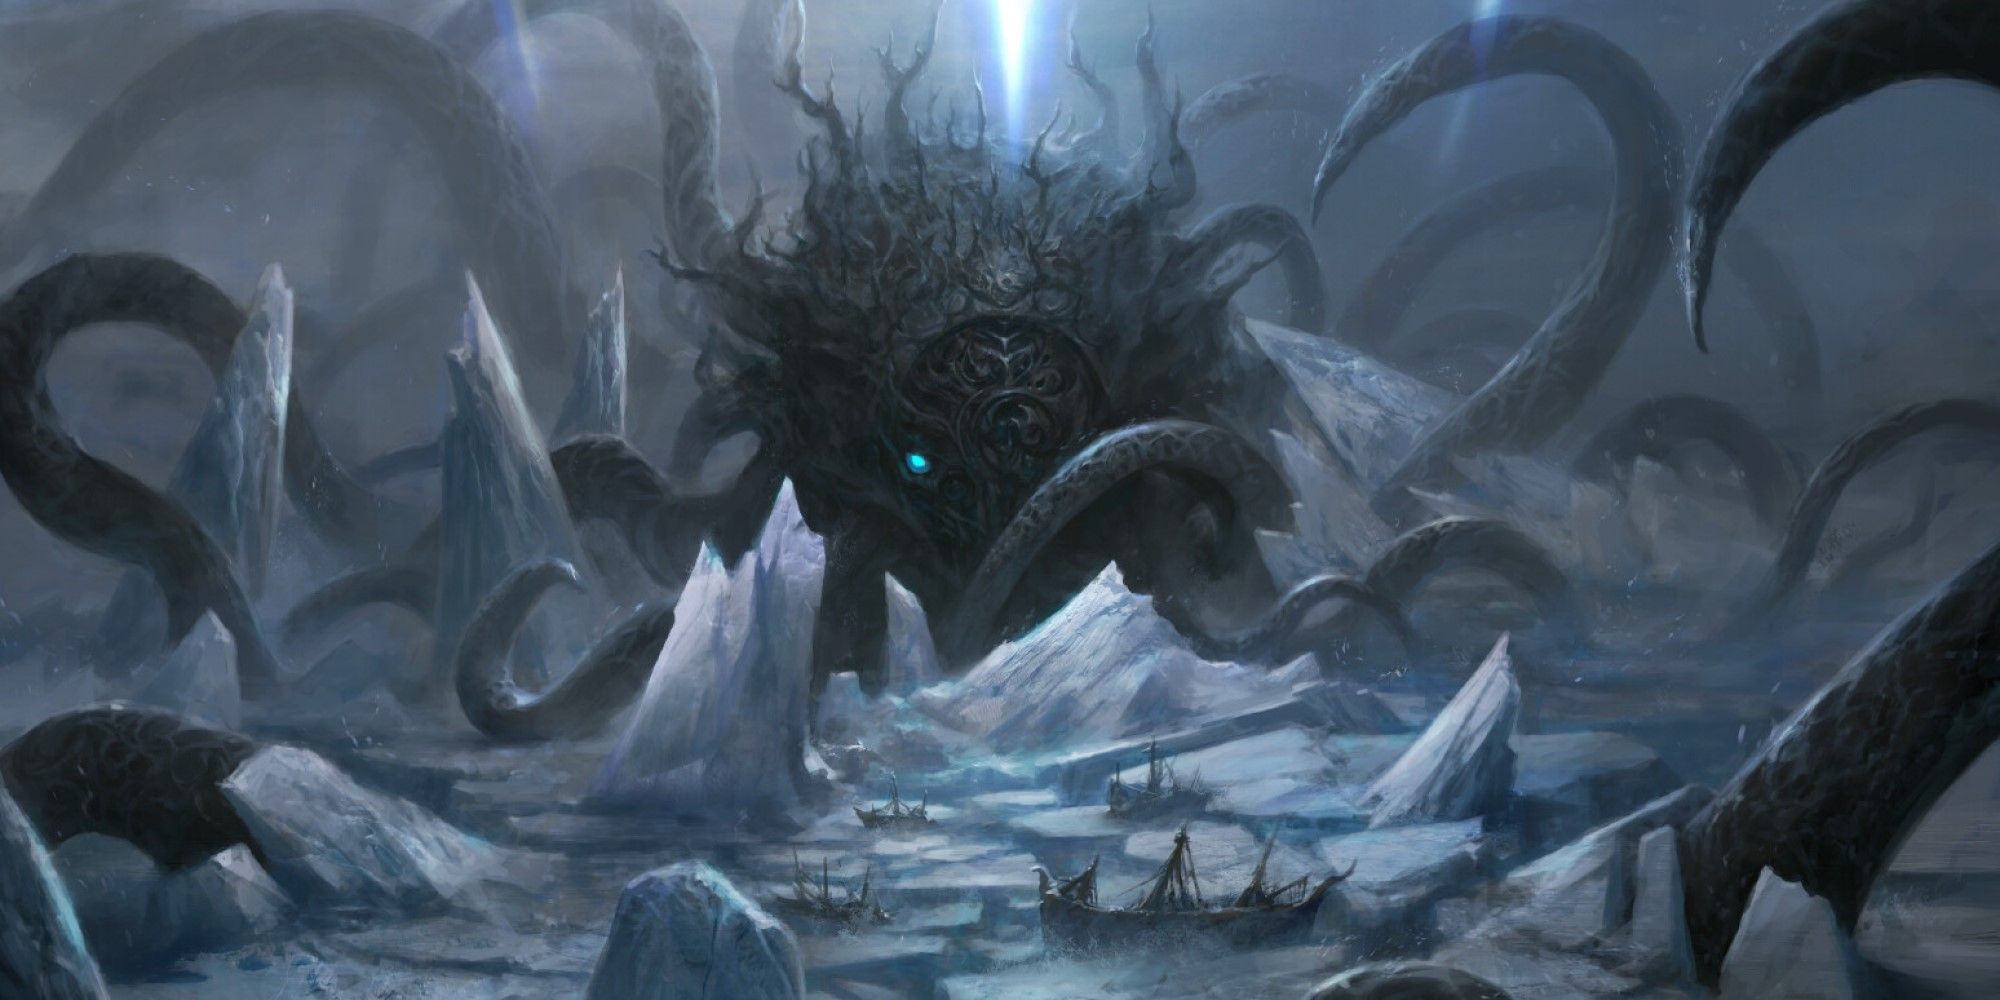 MTG A colossal ice-breaking Kraken